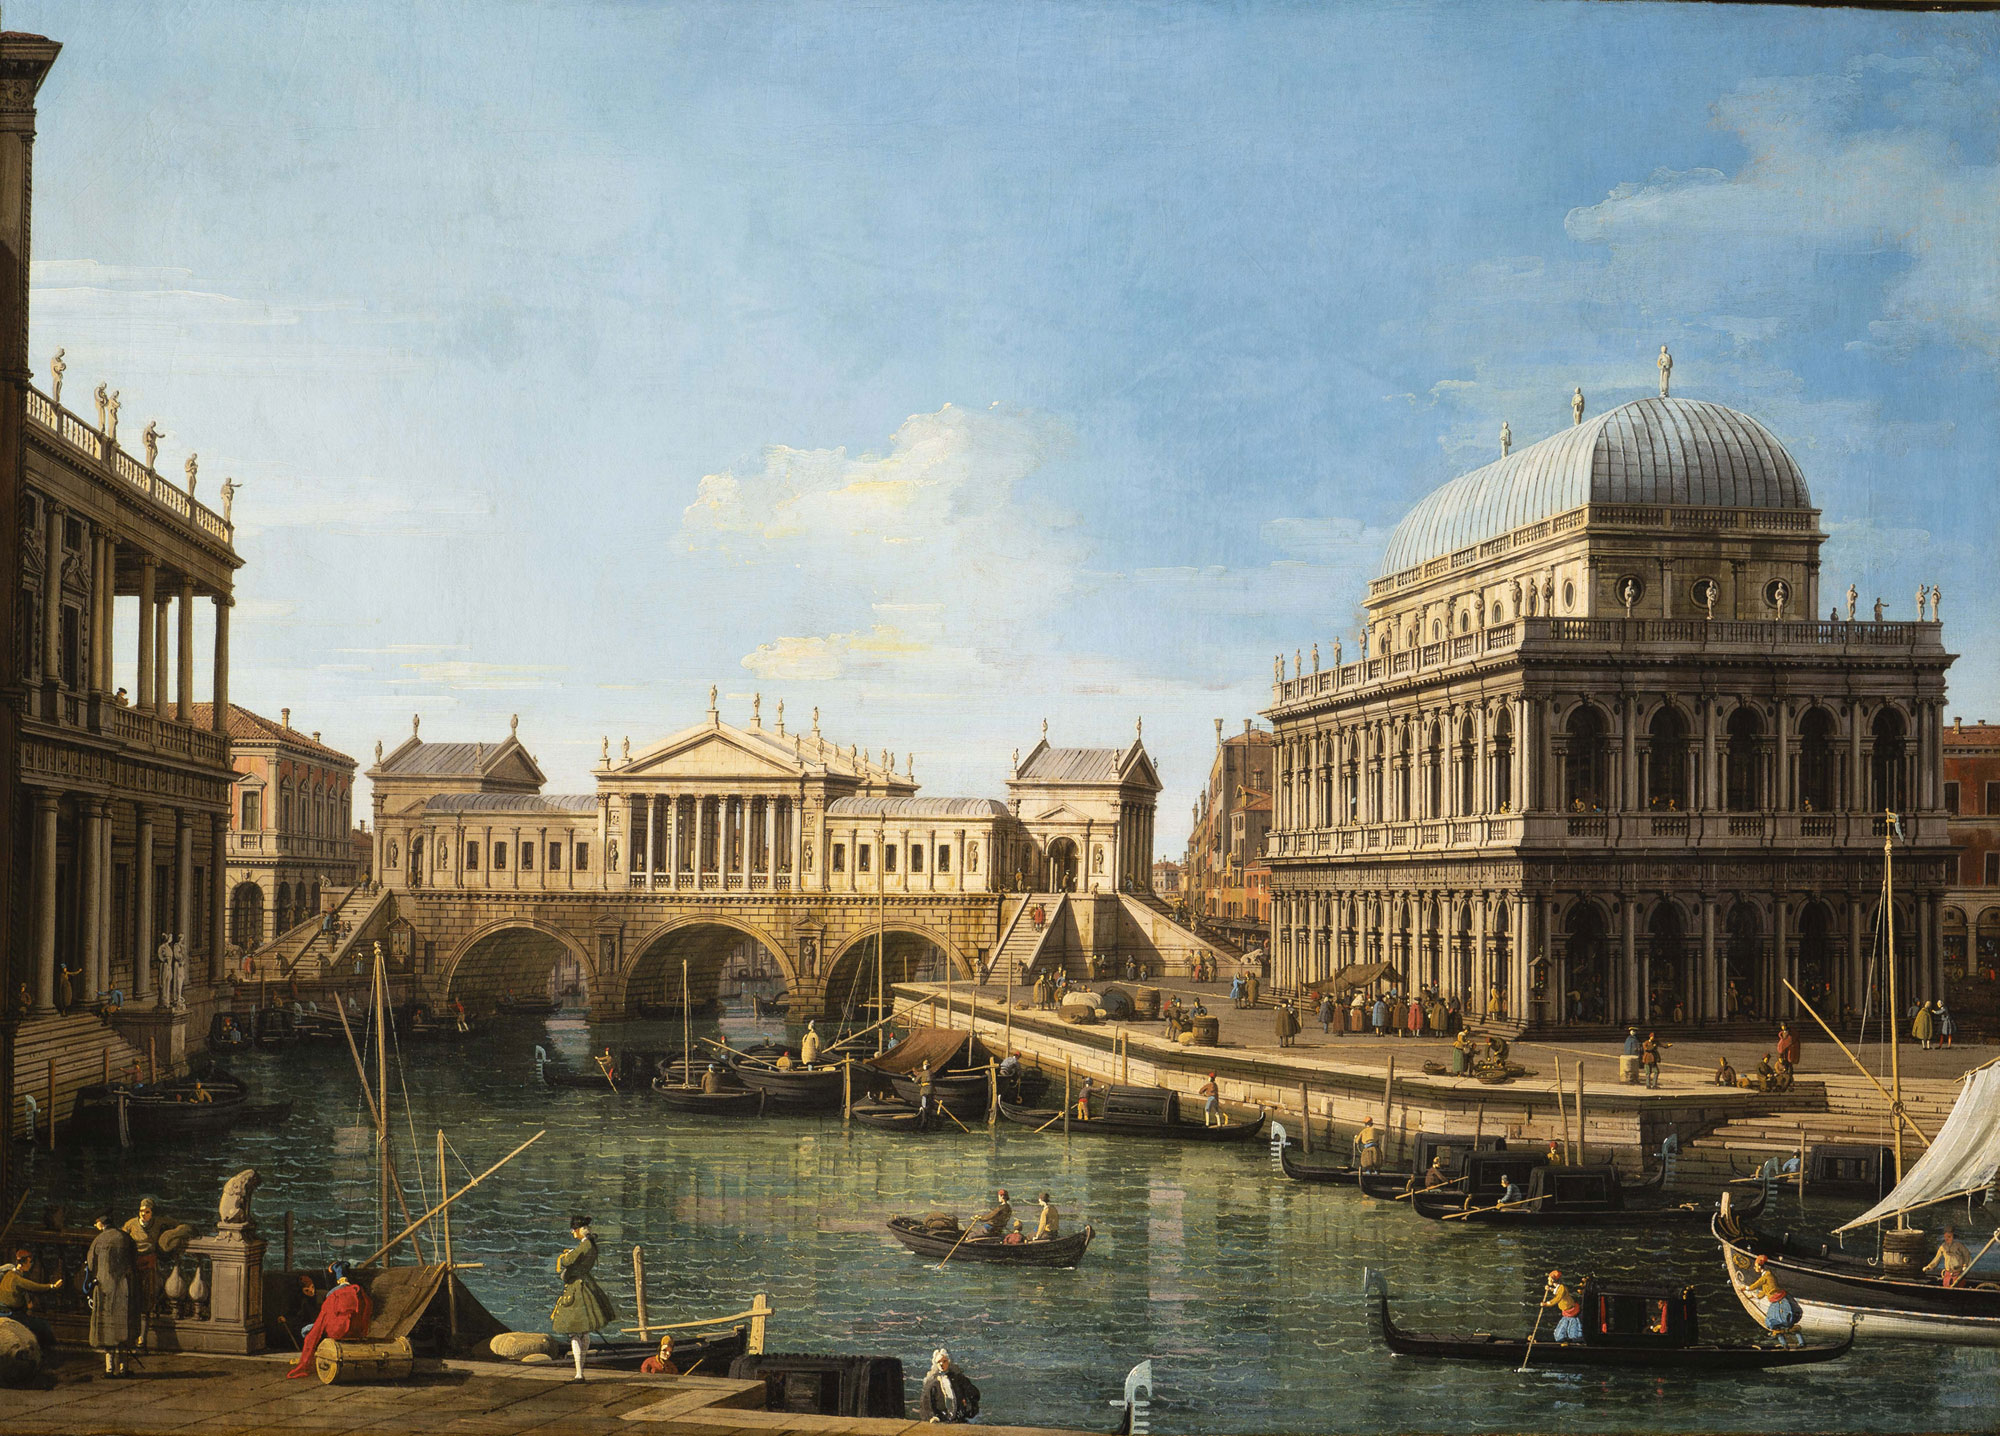 Antonio Canaletto, Capriccio con edifici palladiani (1750 circa; olio su tela, 58 x 82 cm; Parma, Complesso monumentale della Pilotta, inv. 284)
